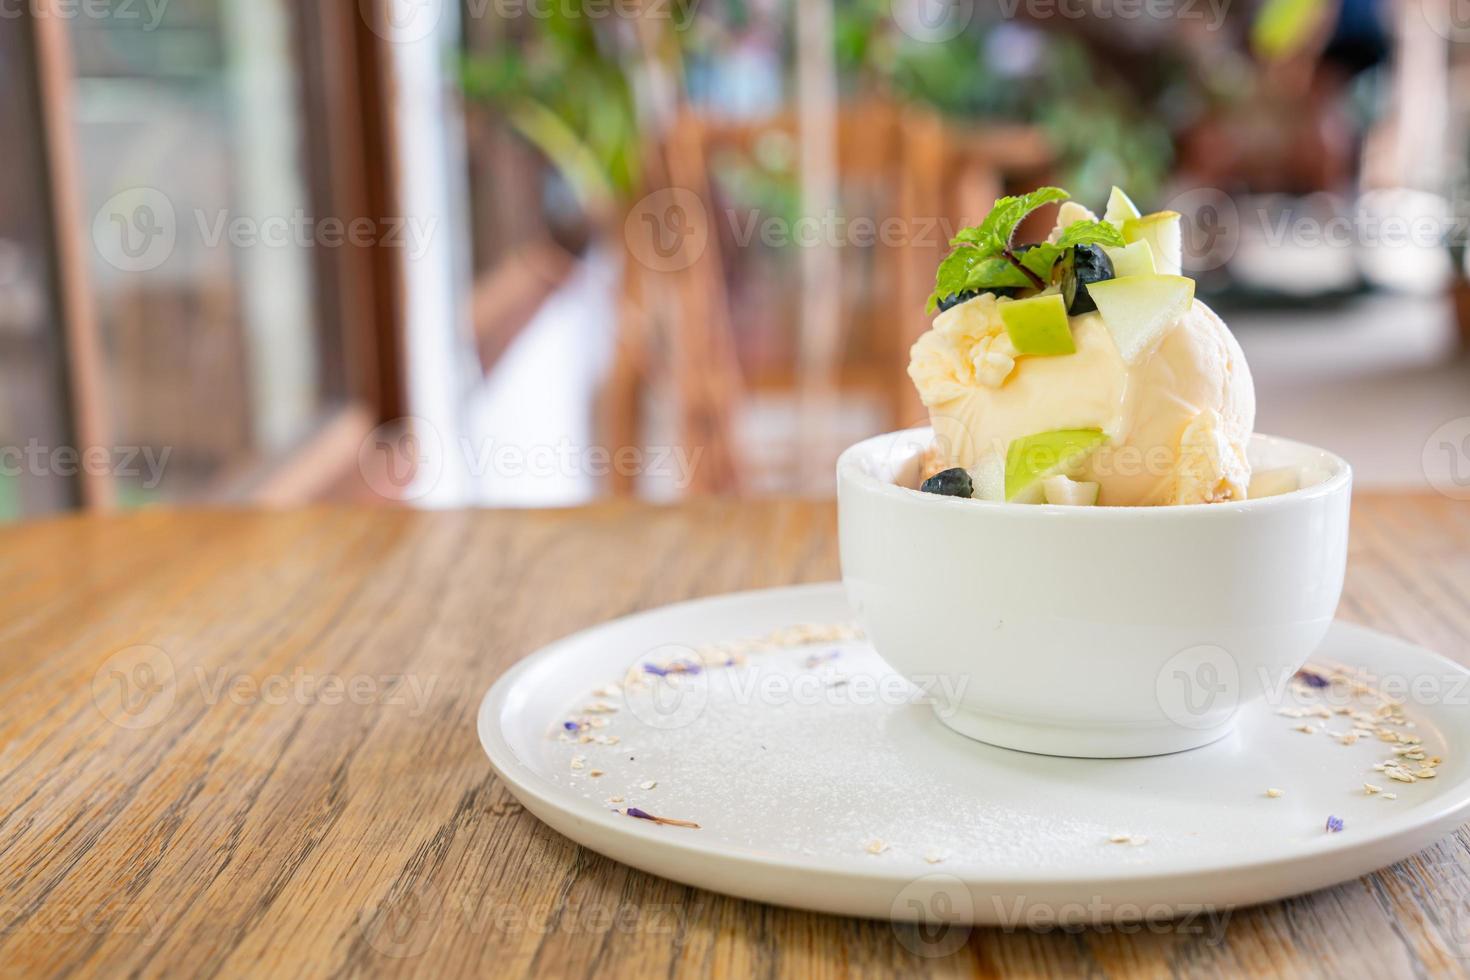 Helado de vainilla con manzana fresca y crumble de manzana en cafetería y restaurante foto